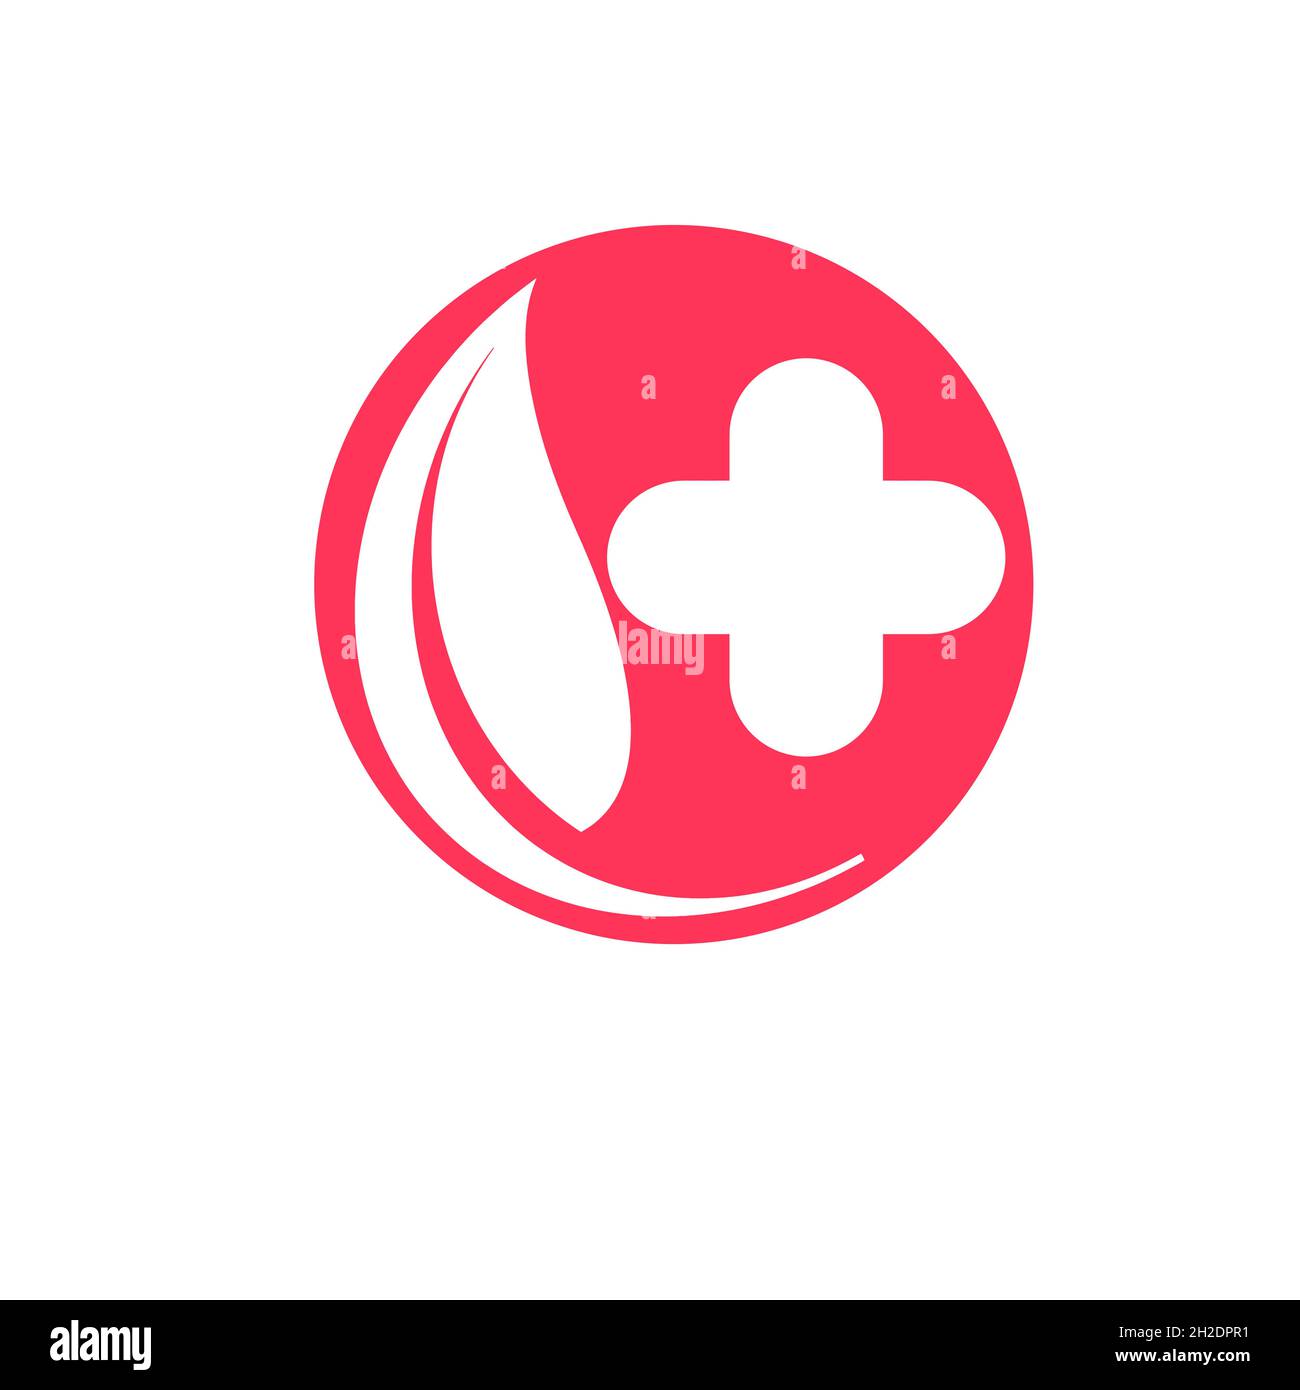 Pharmacie médecin clinique de soins médicaux logo et symboles de l'hôpital Illustration de Vecteur